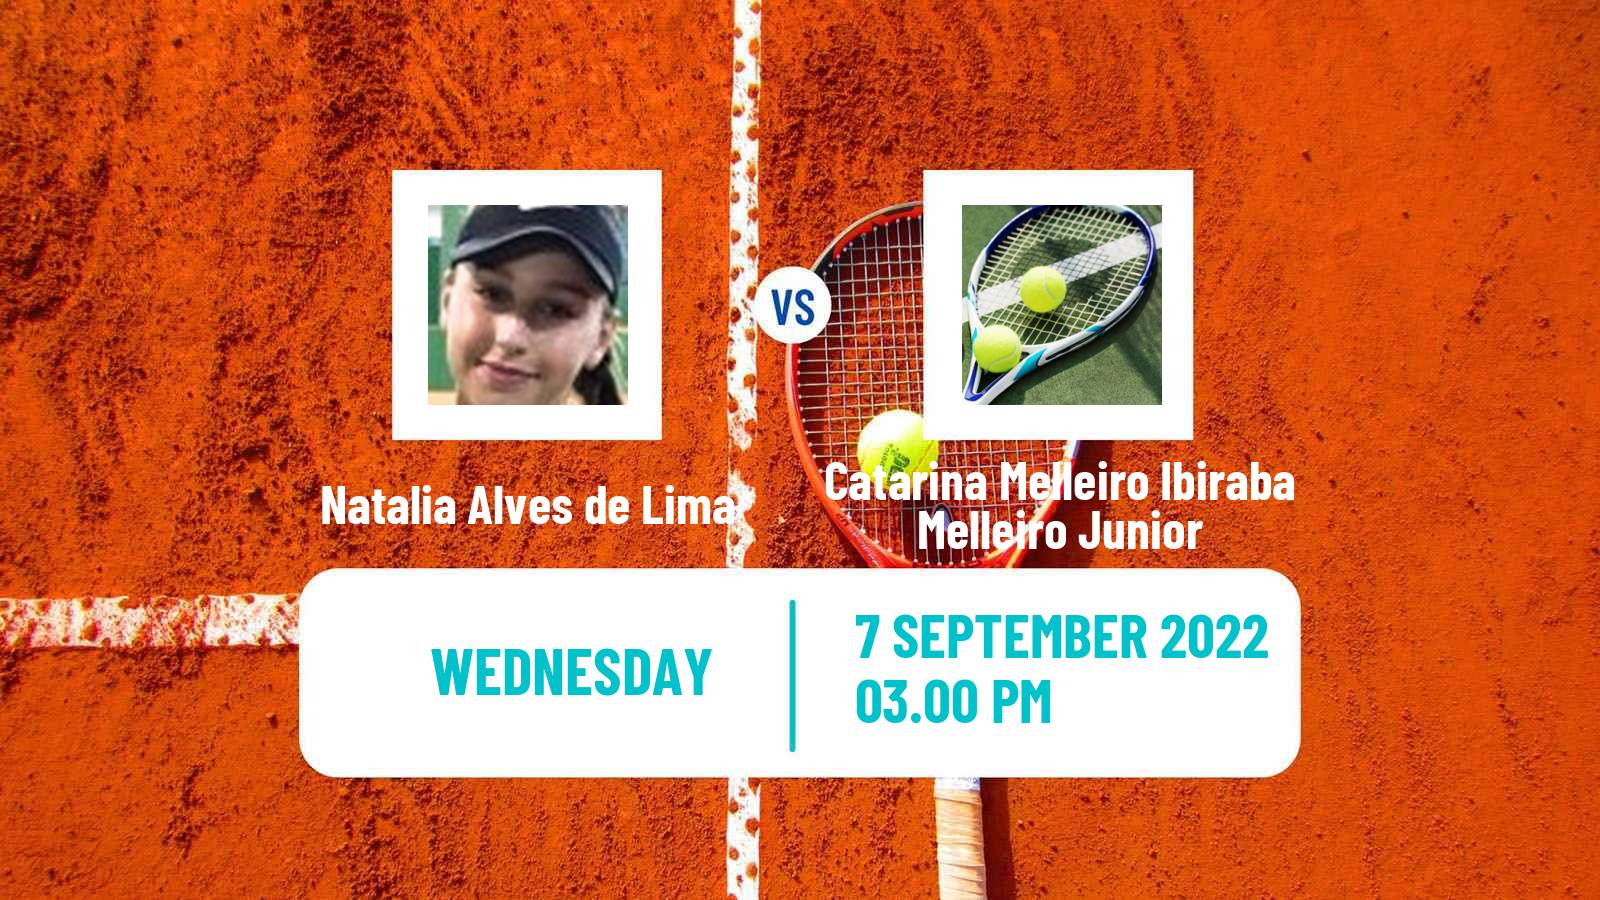 Tennis ITF Tournaments Natalia Alves de Lima - Catarina Melleiro Ibiraba Melleiro Junior